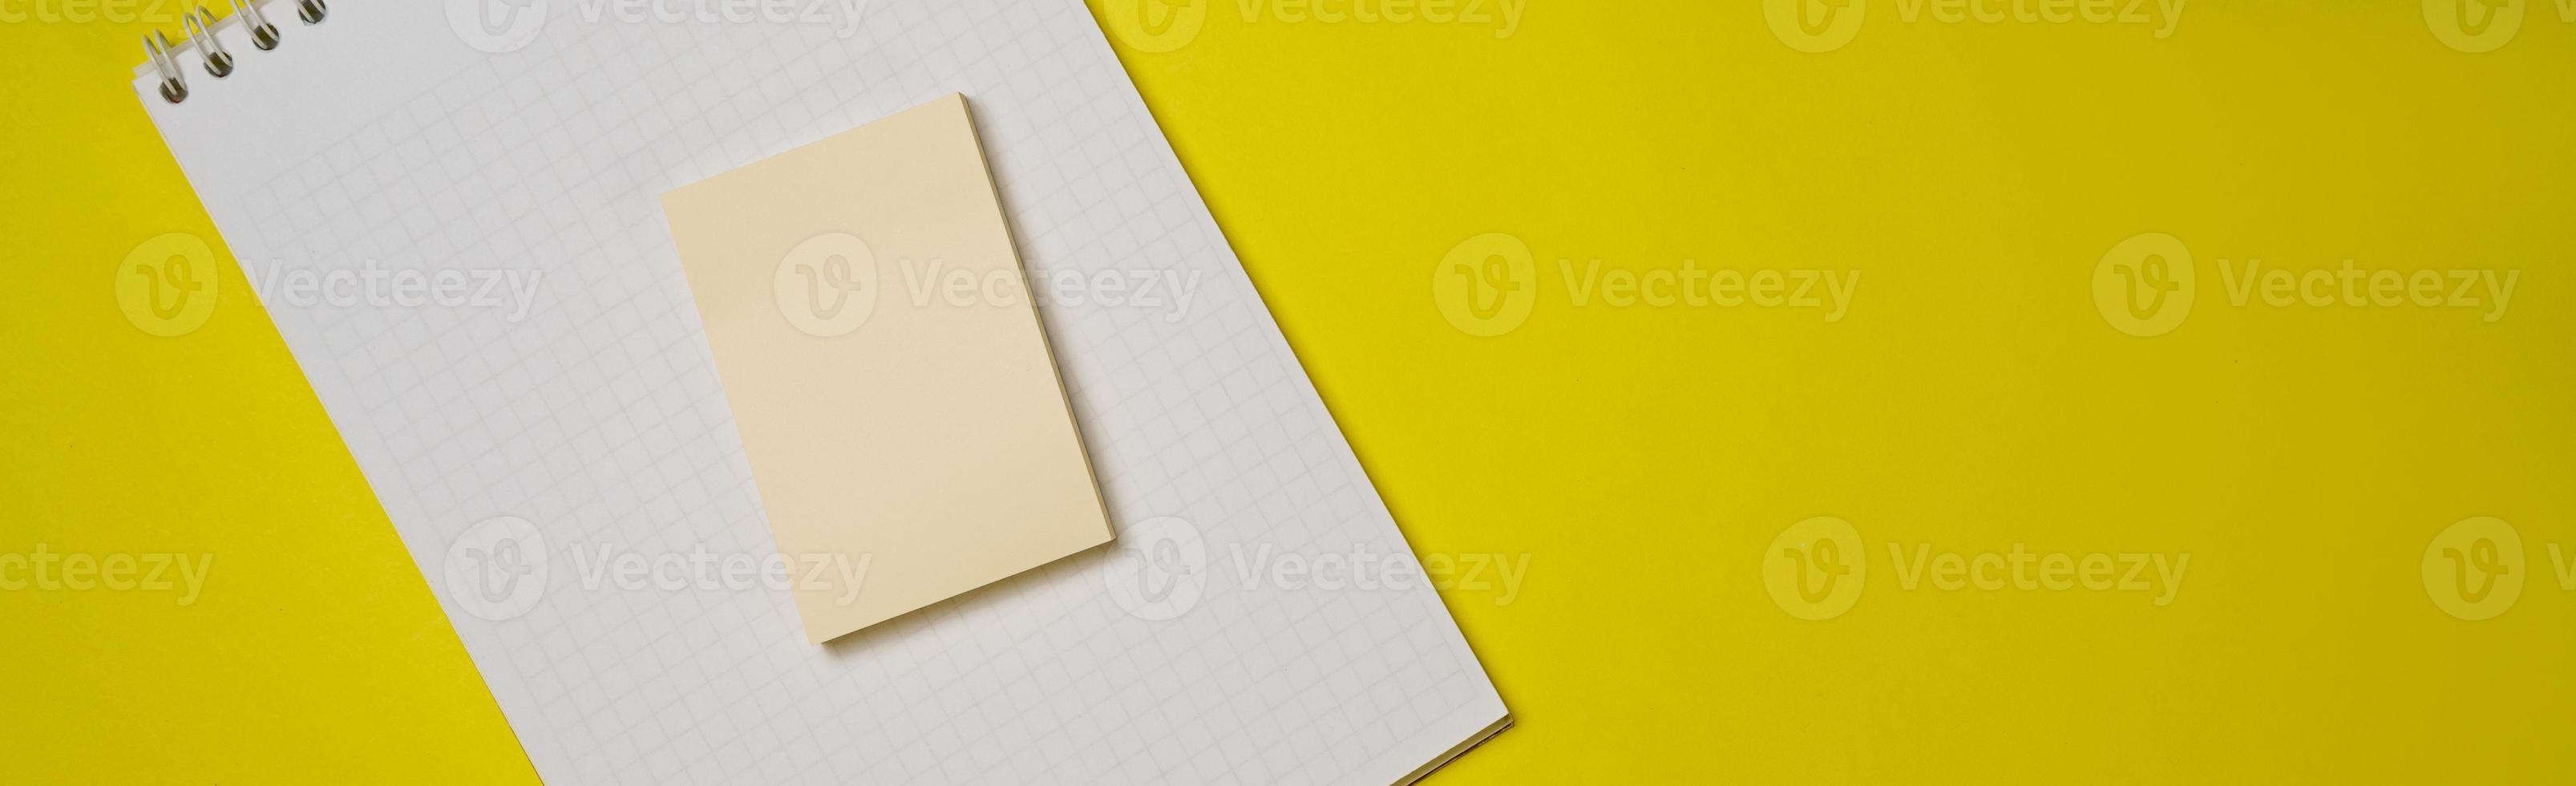 abra el bloc de notas blanco en blanco en una espiral y pegatinas en un fondo amarillo. foto